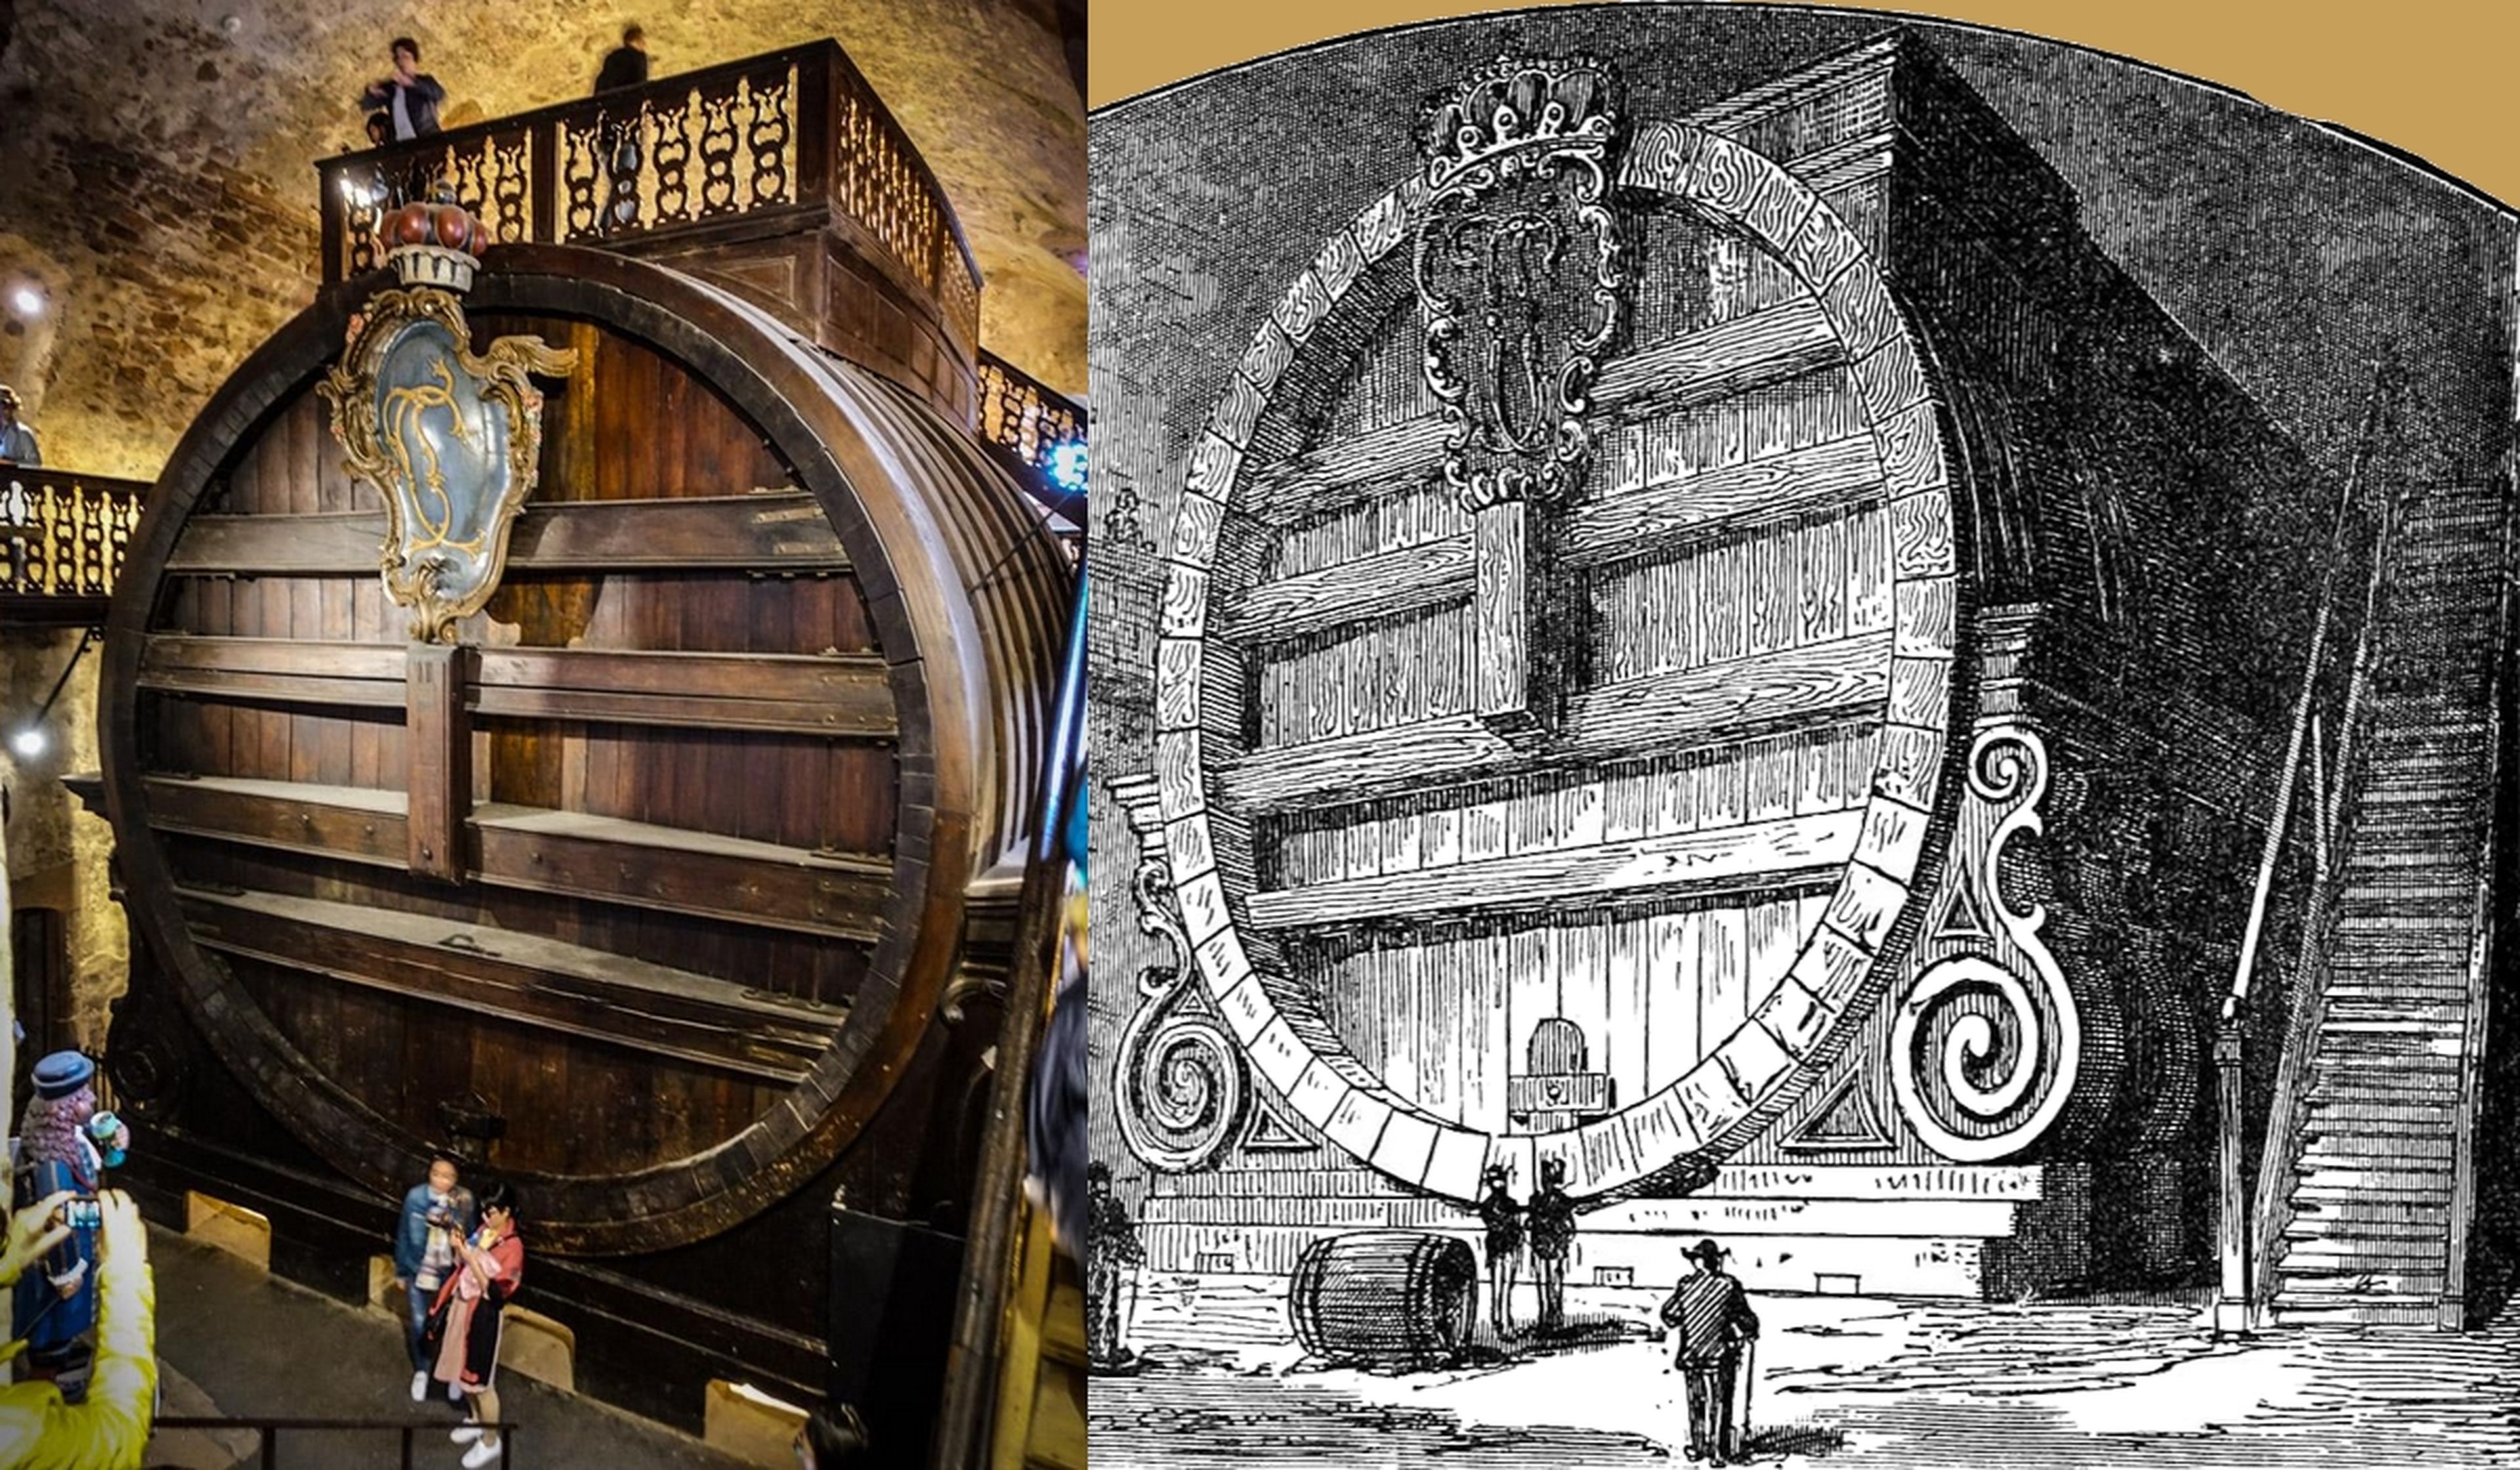 n barril de vino más grande del mundo caben 219.000 litros, y tiene una pista de baile en la parte superior